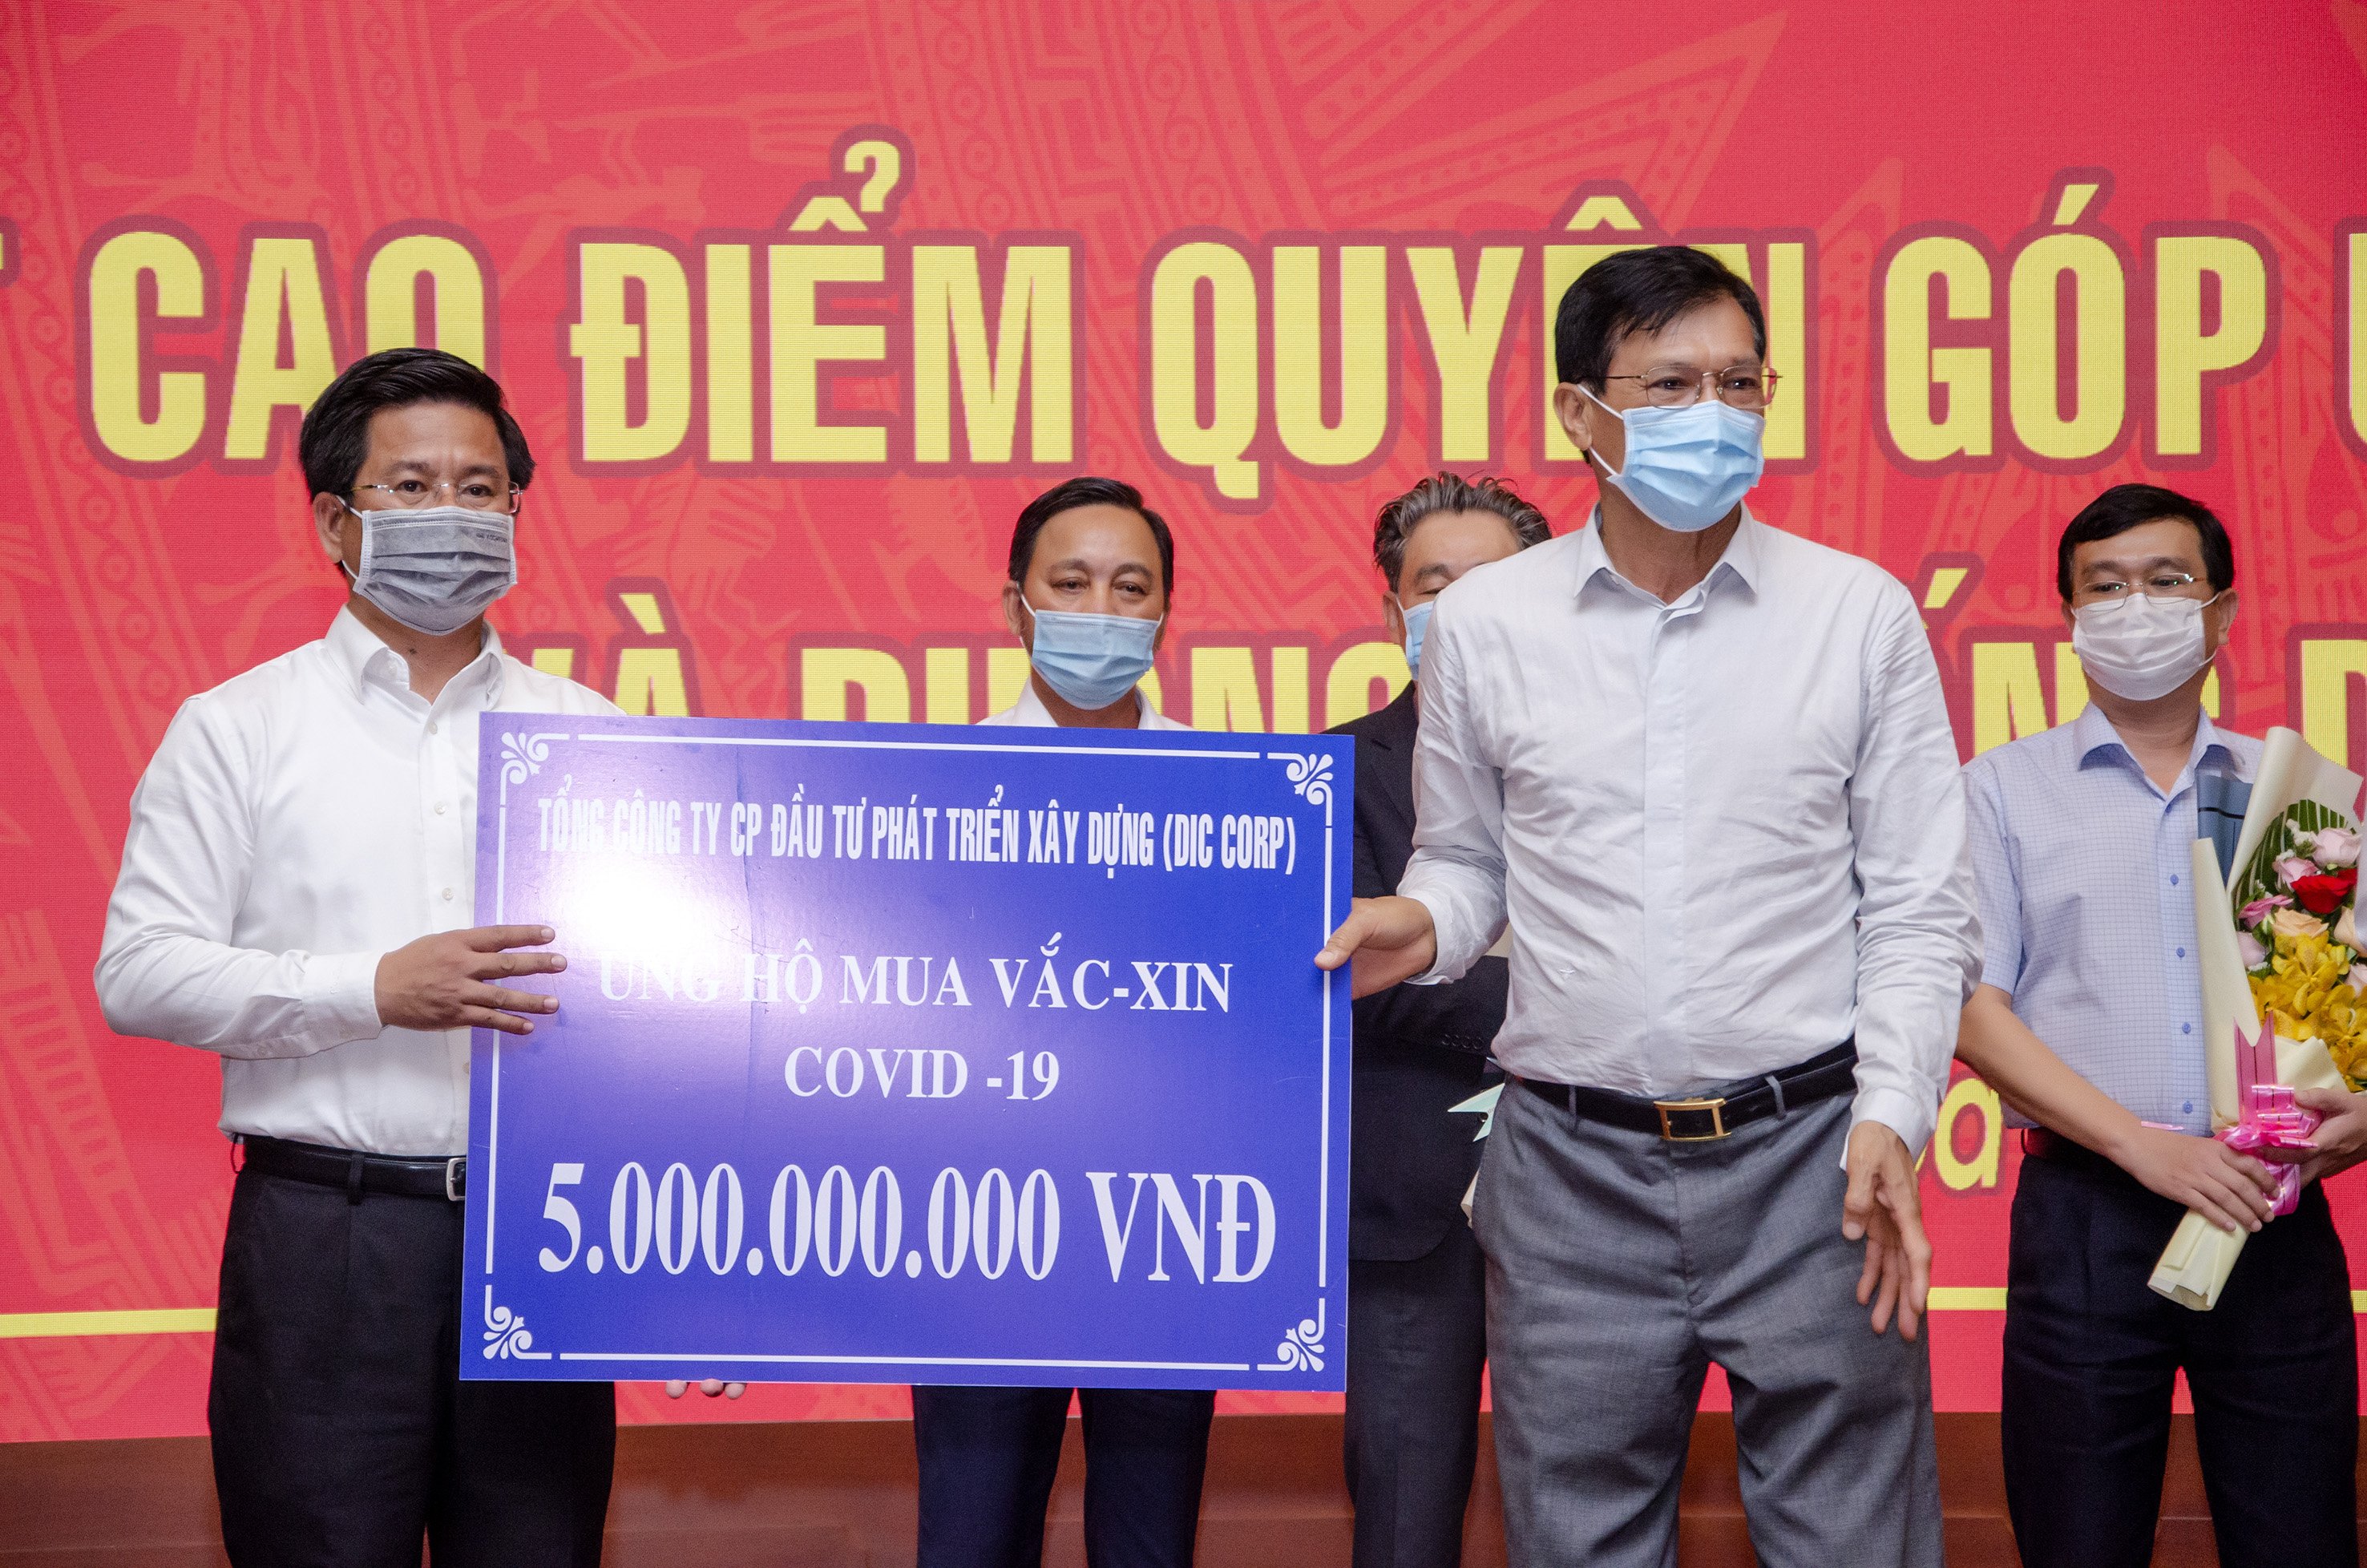 Đại diện Tổng Công ty CP Đầu tư Phát triển Xây dựng (DIC CORP) trao bảng tượng trưng ủng hộ 5 tỷ đồng mua vaccine và phòng, chống dịch bệnh COVID-19 cho UBMTTQ Việt Nam tỉnh.